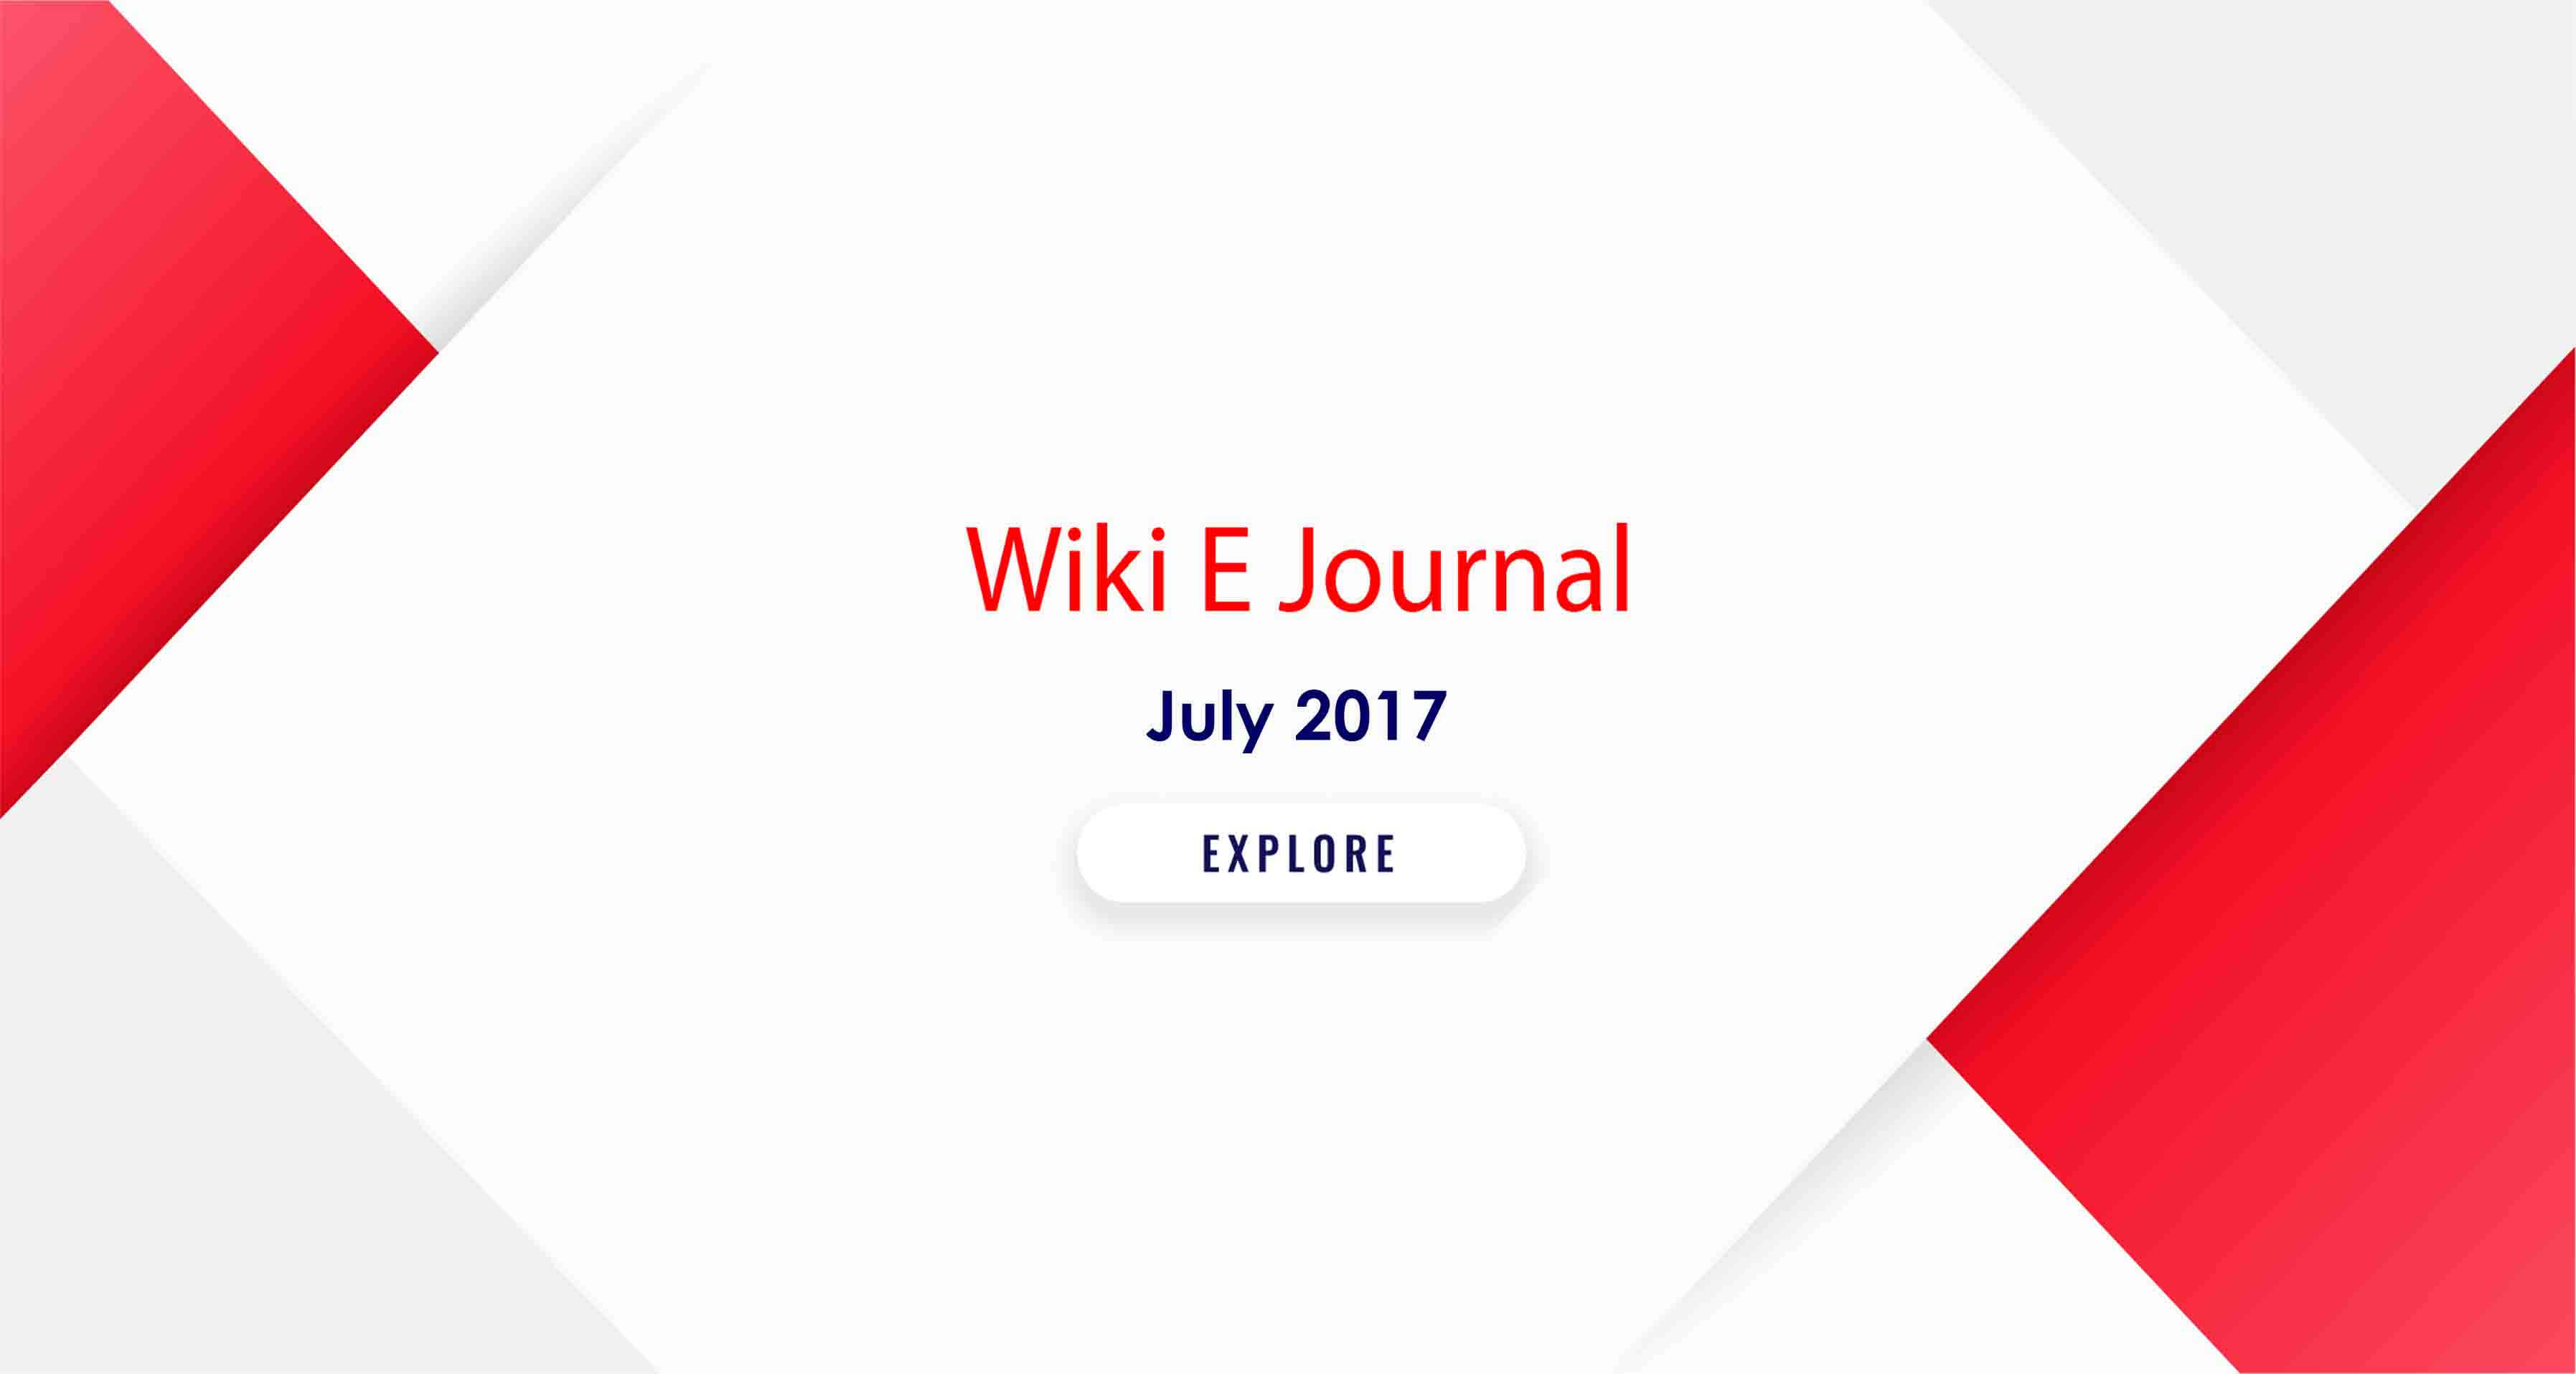 SBS WIKI E Journal July 2017